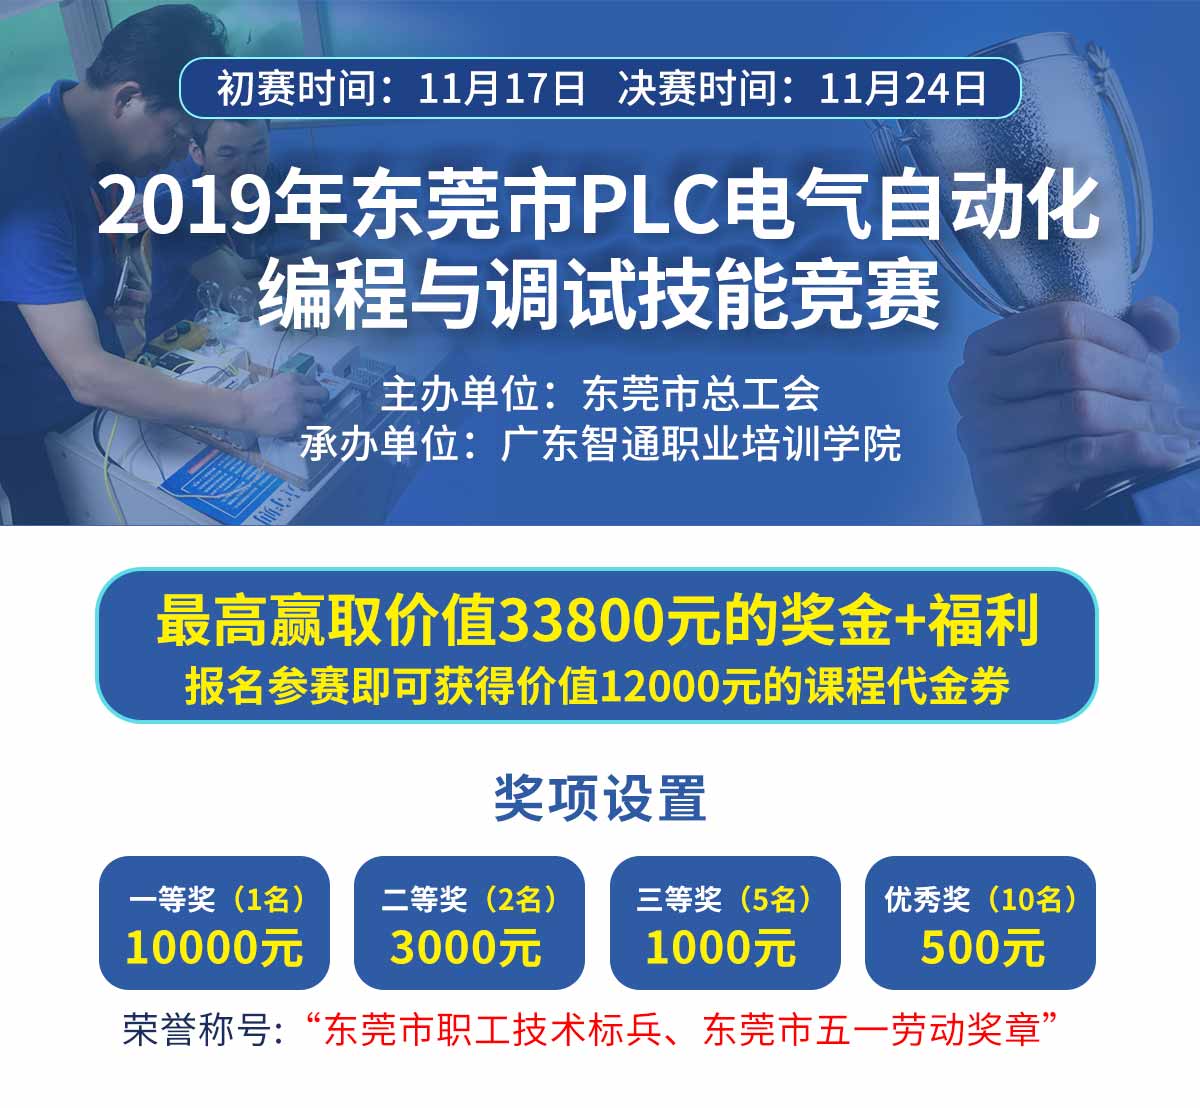 東莞市PLC電氣自動化編程與調試技能競賽01